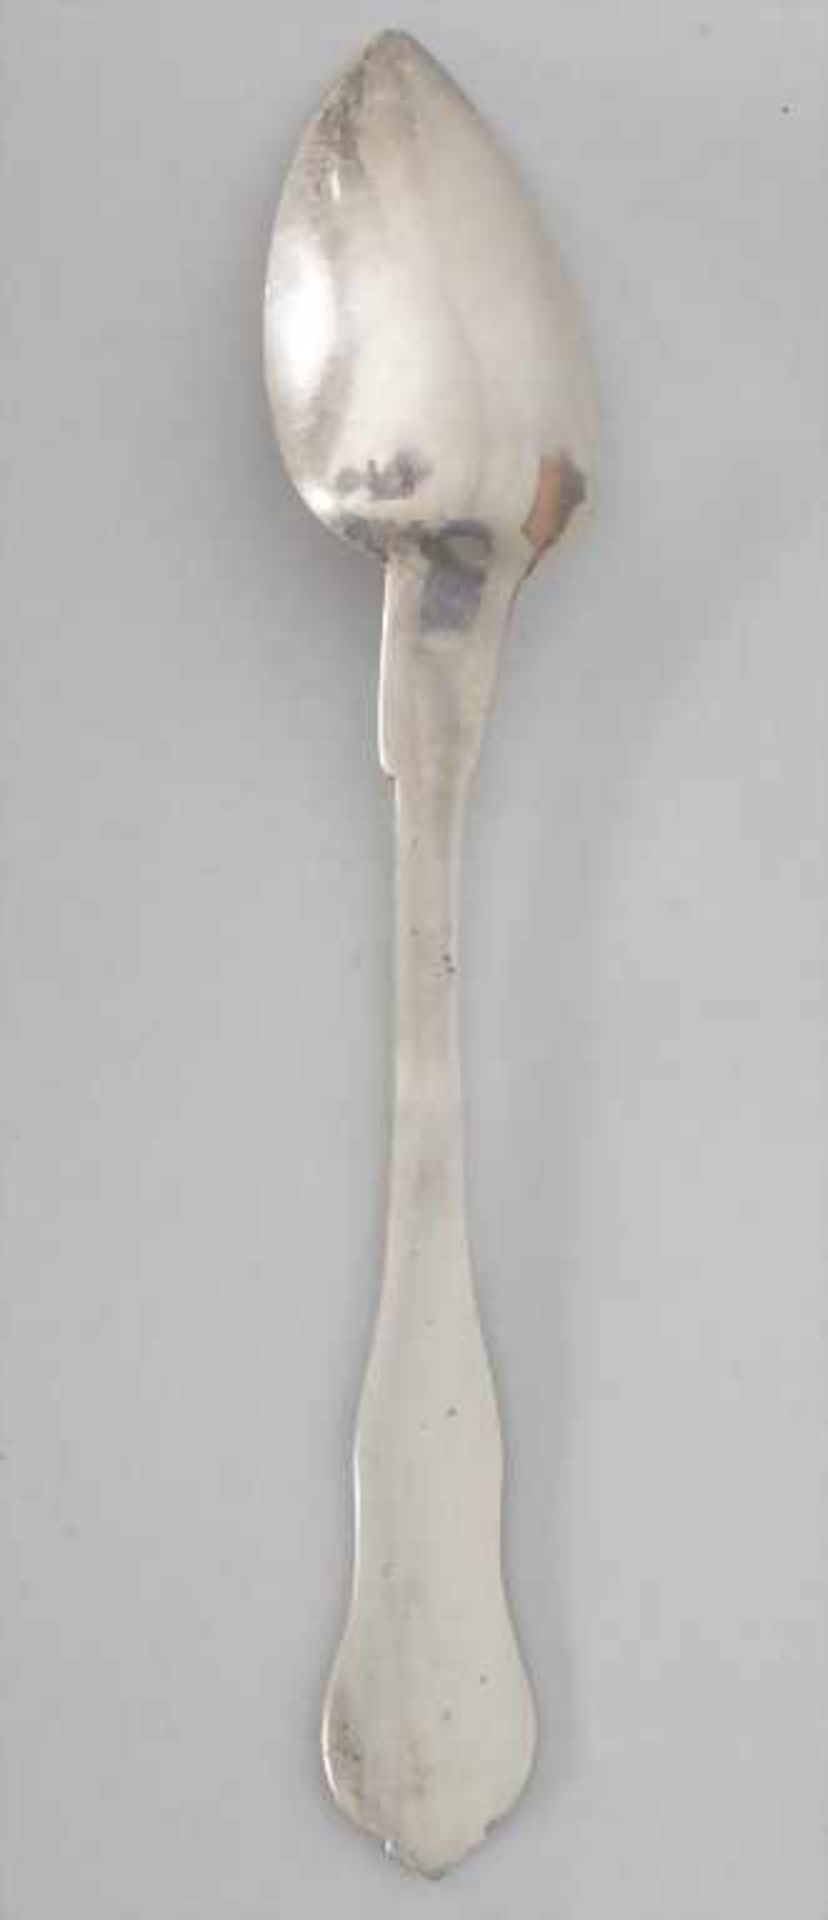 6 Teelöffel / 6 silver tea spoons, J. Bourdon, Paris, nach 1819< - Bild 3 aus 5